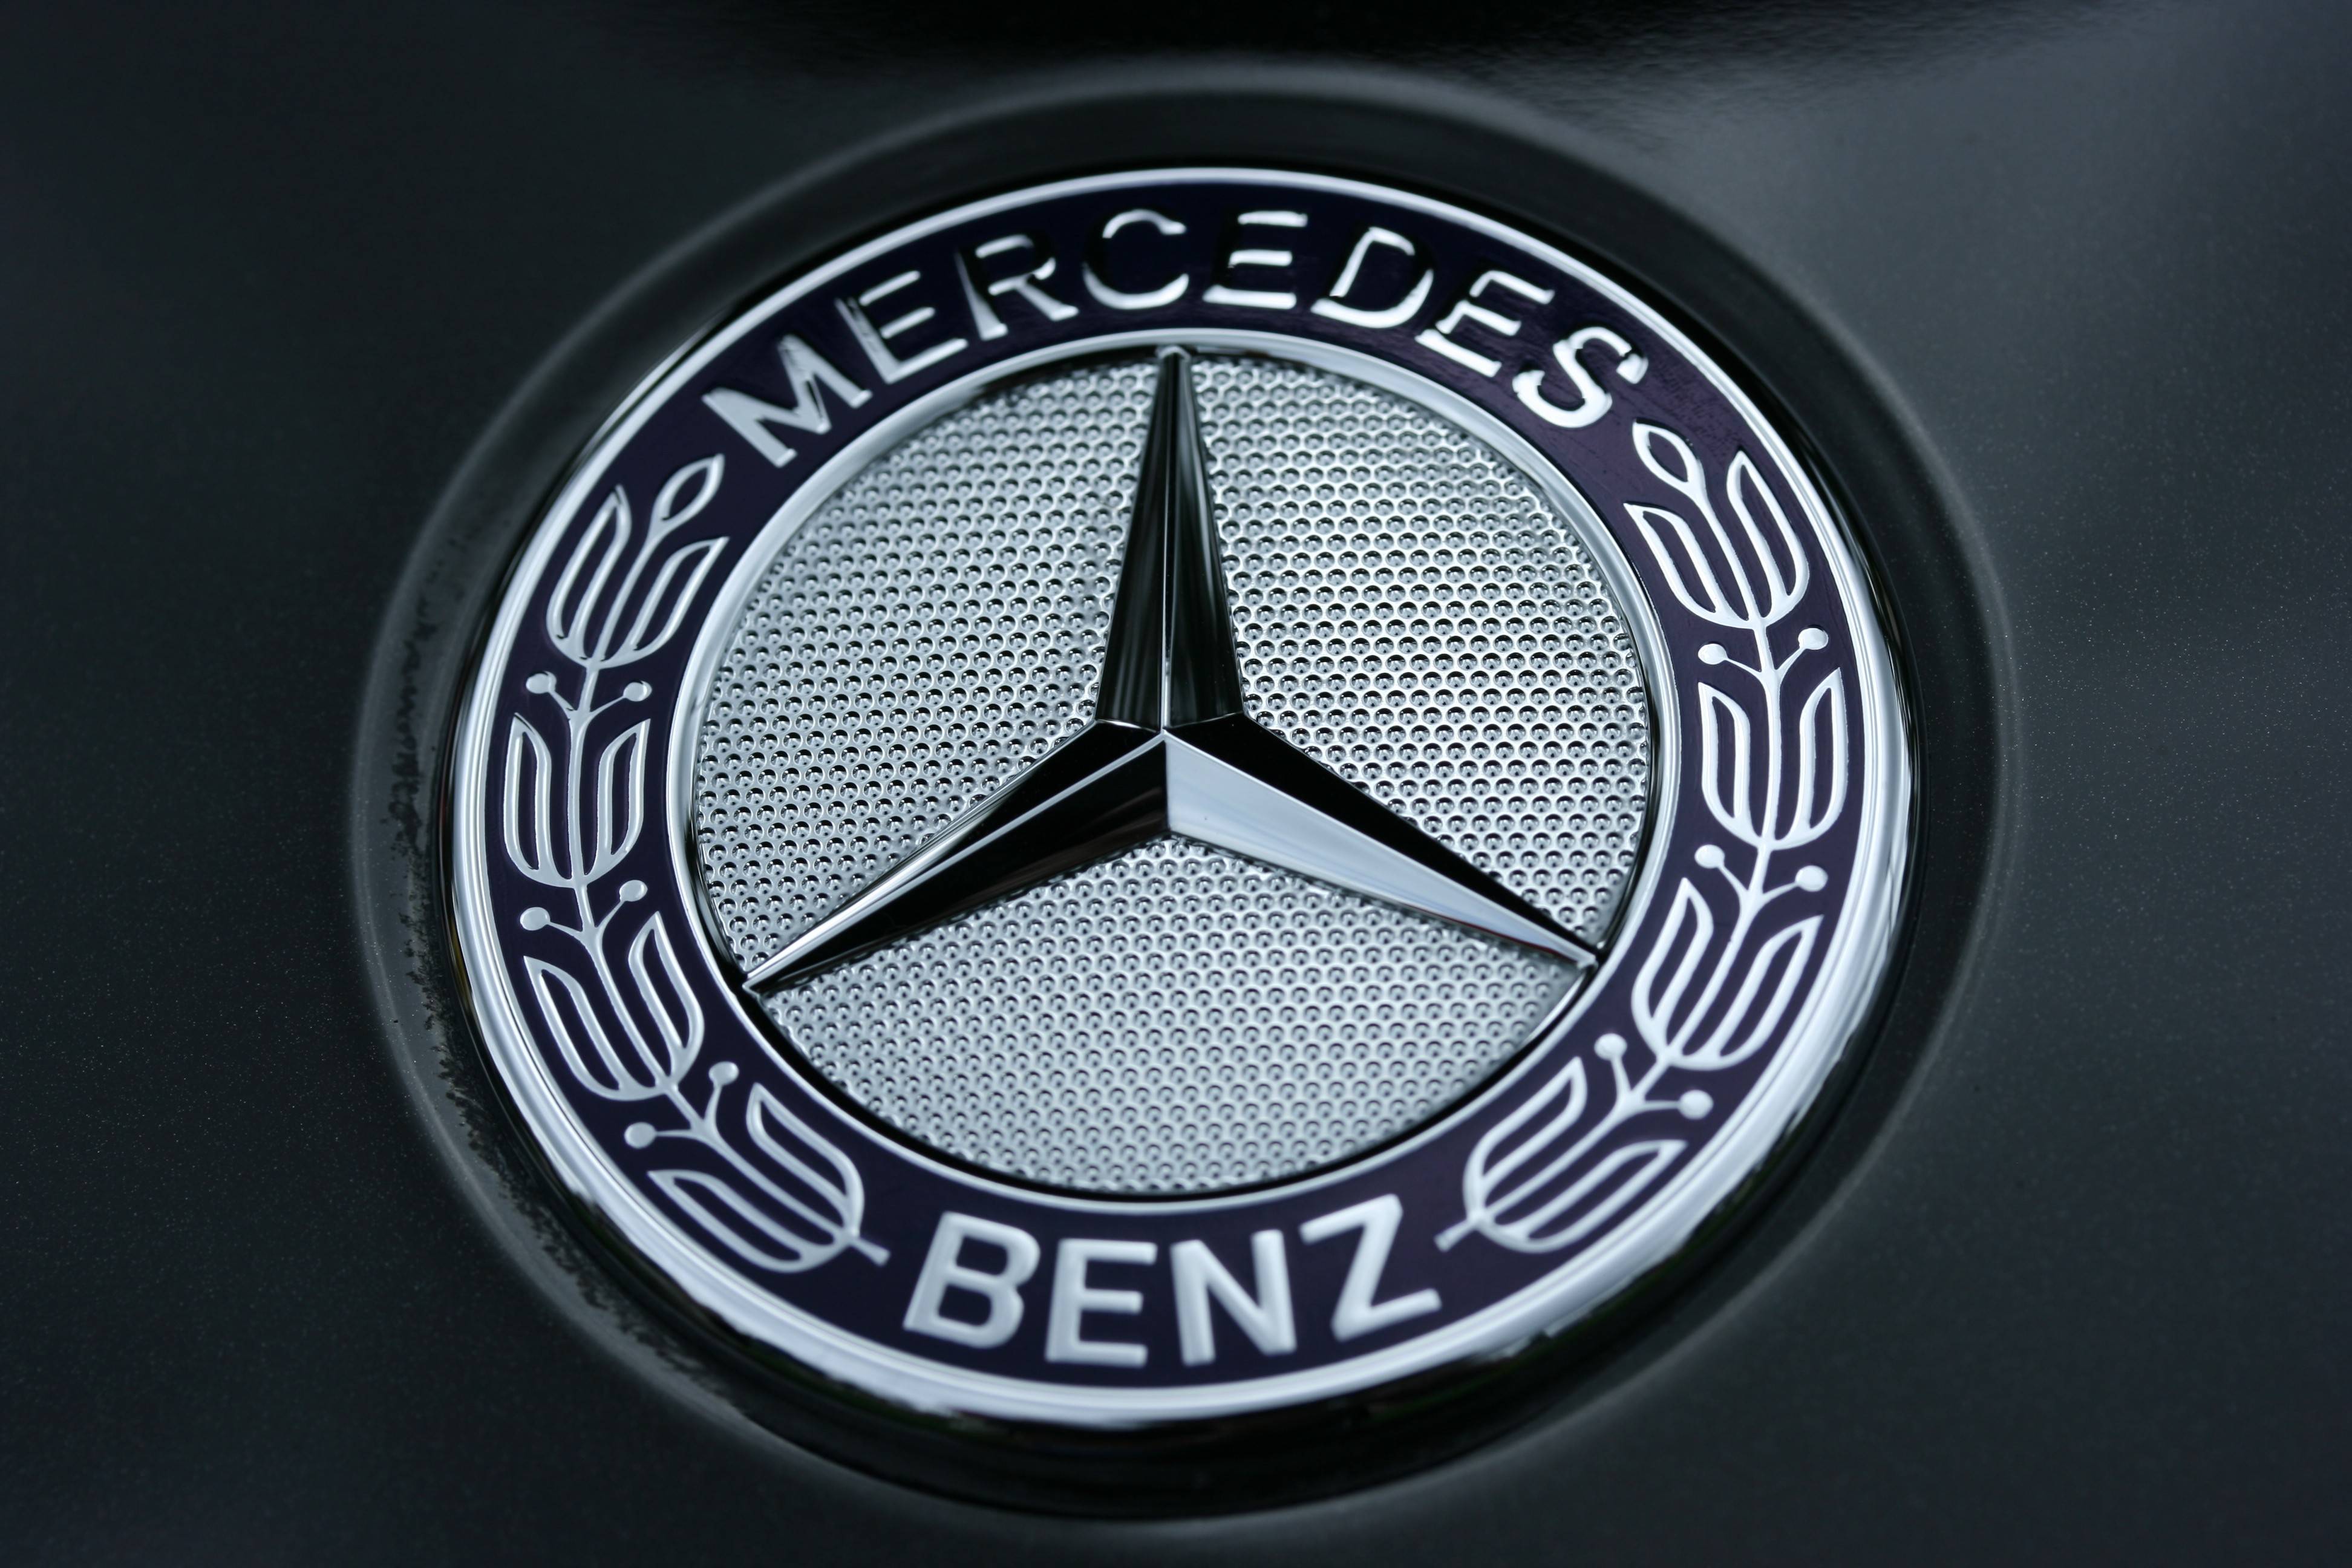 R Mercedes Benz Cls63 Amg Interior HD Wallpaper IPhone 6 Plus